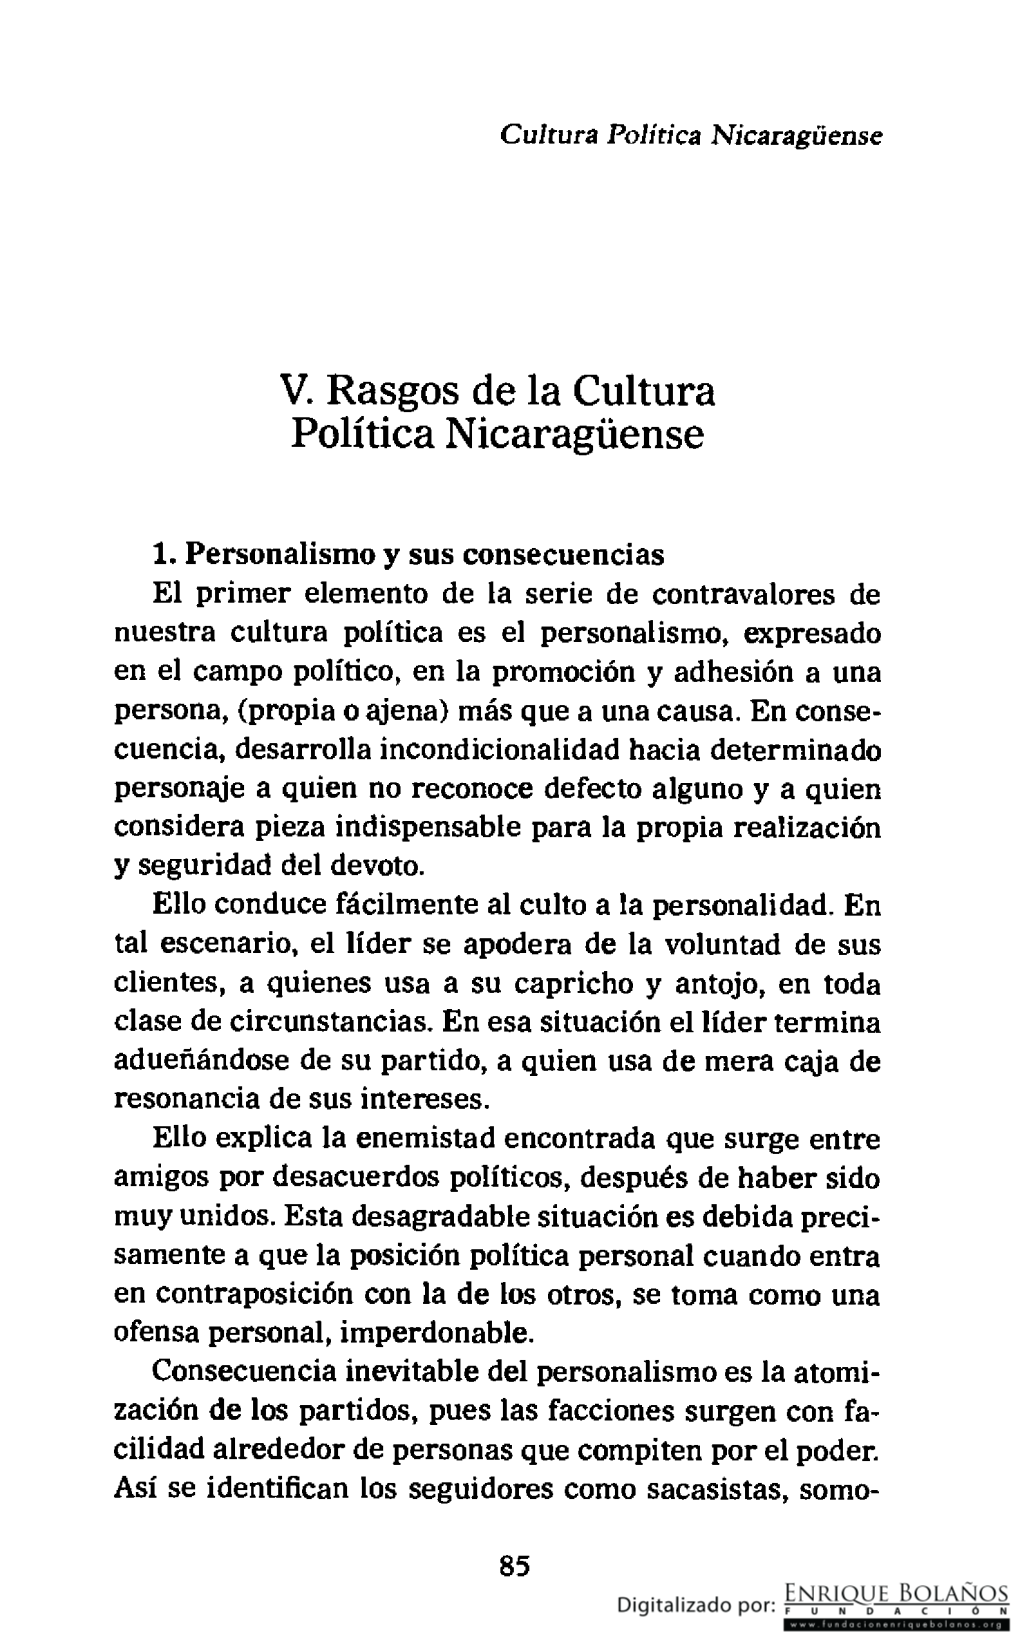 V. Rasgos De La Cultura Política Nicaraguense